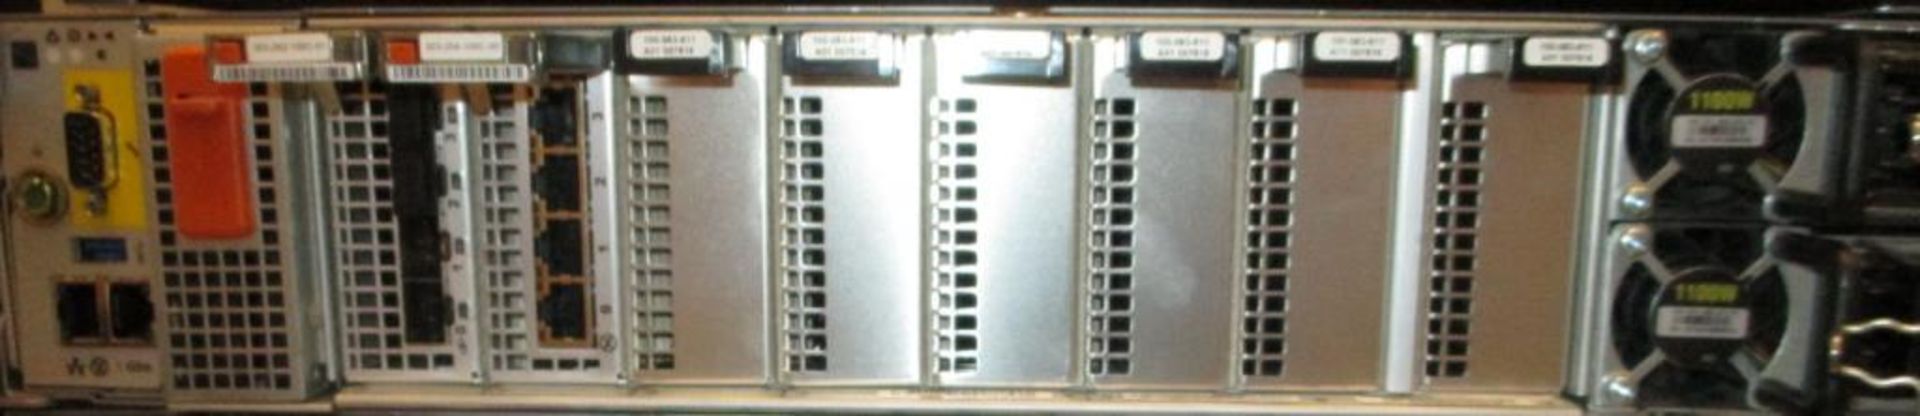 Dell EMC Rack Server - Image 3 of 3